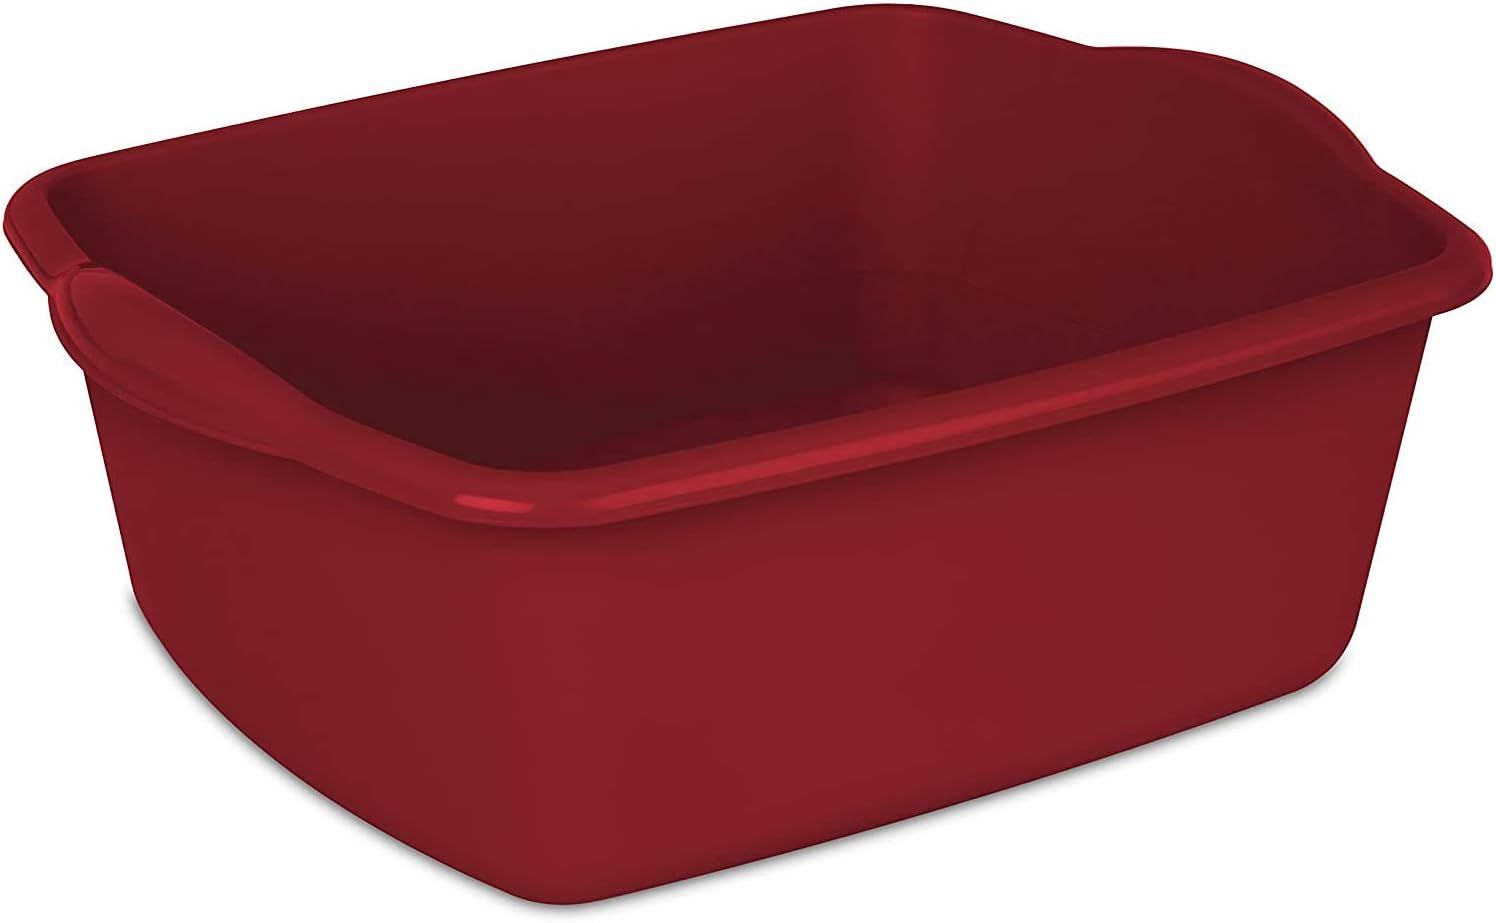 Sterilite 12QT RED Sterlite 12 Quart Dishpan Basin, 1 Pack | Amazon (US)